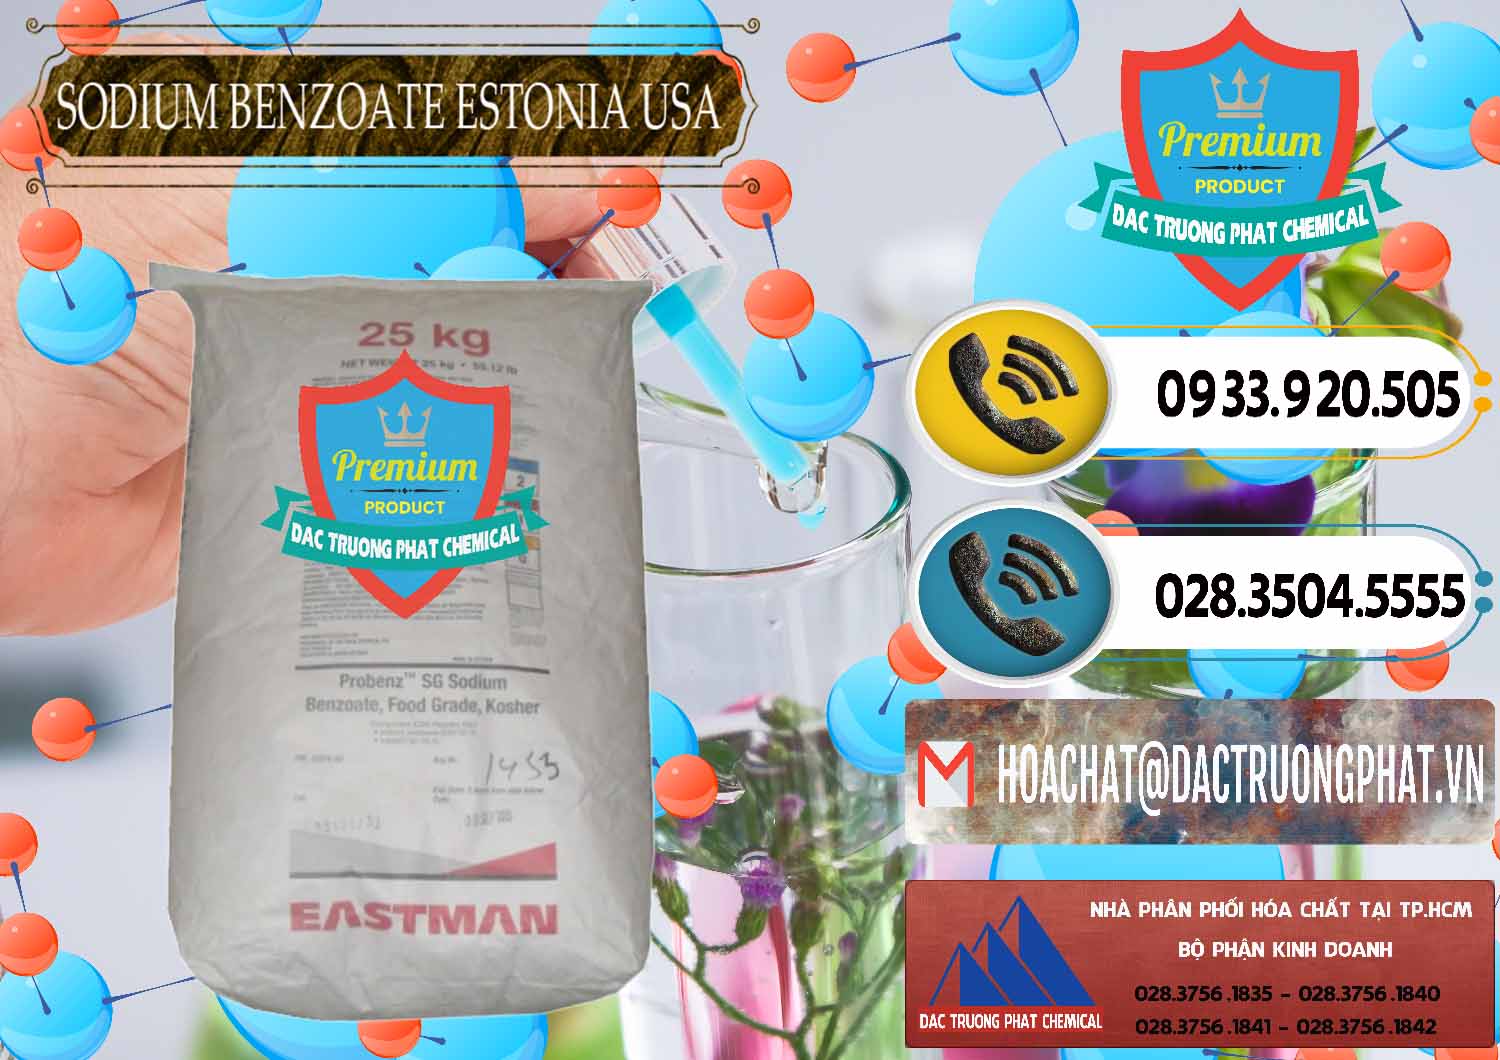 Cty kinh doanh ( bán ) Sodium Benzoate - Mốc Bột Estonia Mỹ USA - 0468 - Đơn vị chuyên phân phối _ cung ứng hóa chất tại TP.HCM - hoachatdetnhuom.vn